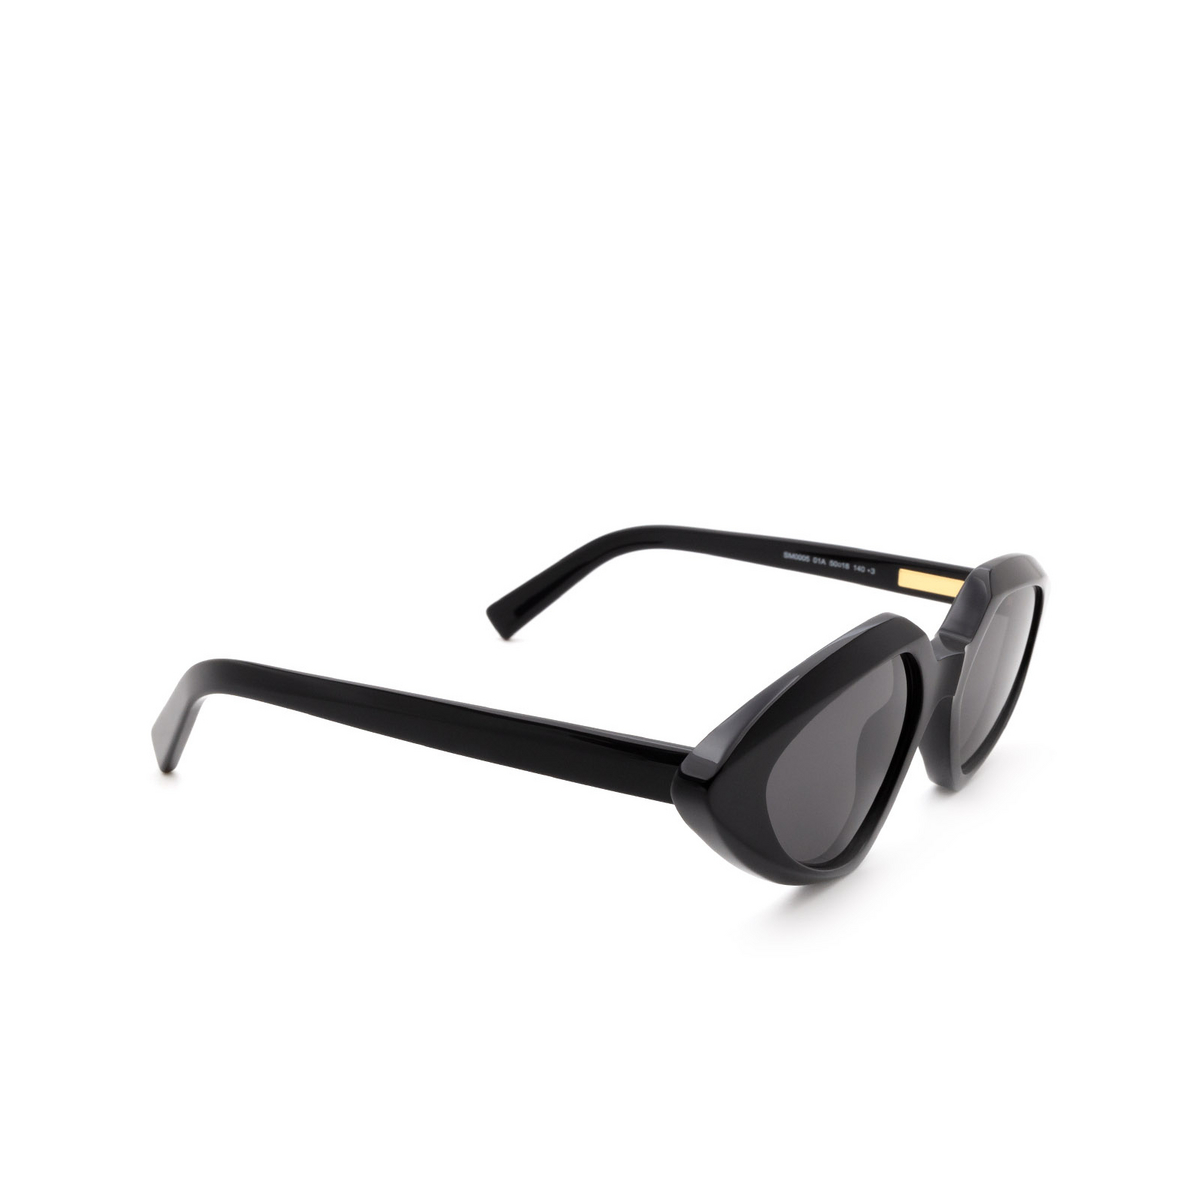 Sportmax® Irregular Sunglasses: SM0005 color Shiny Black 01A - three-quarters view.